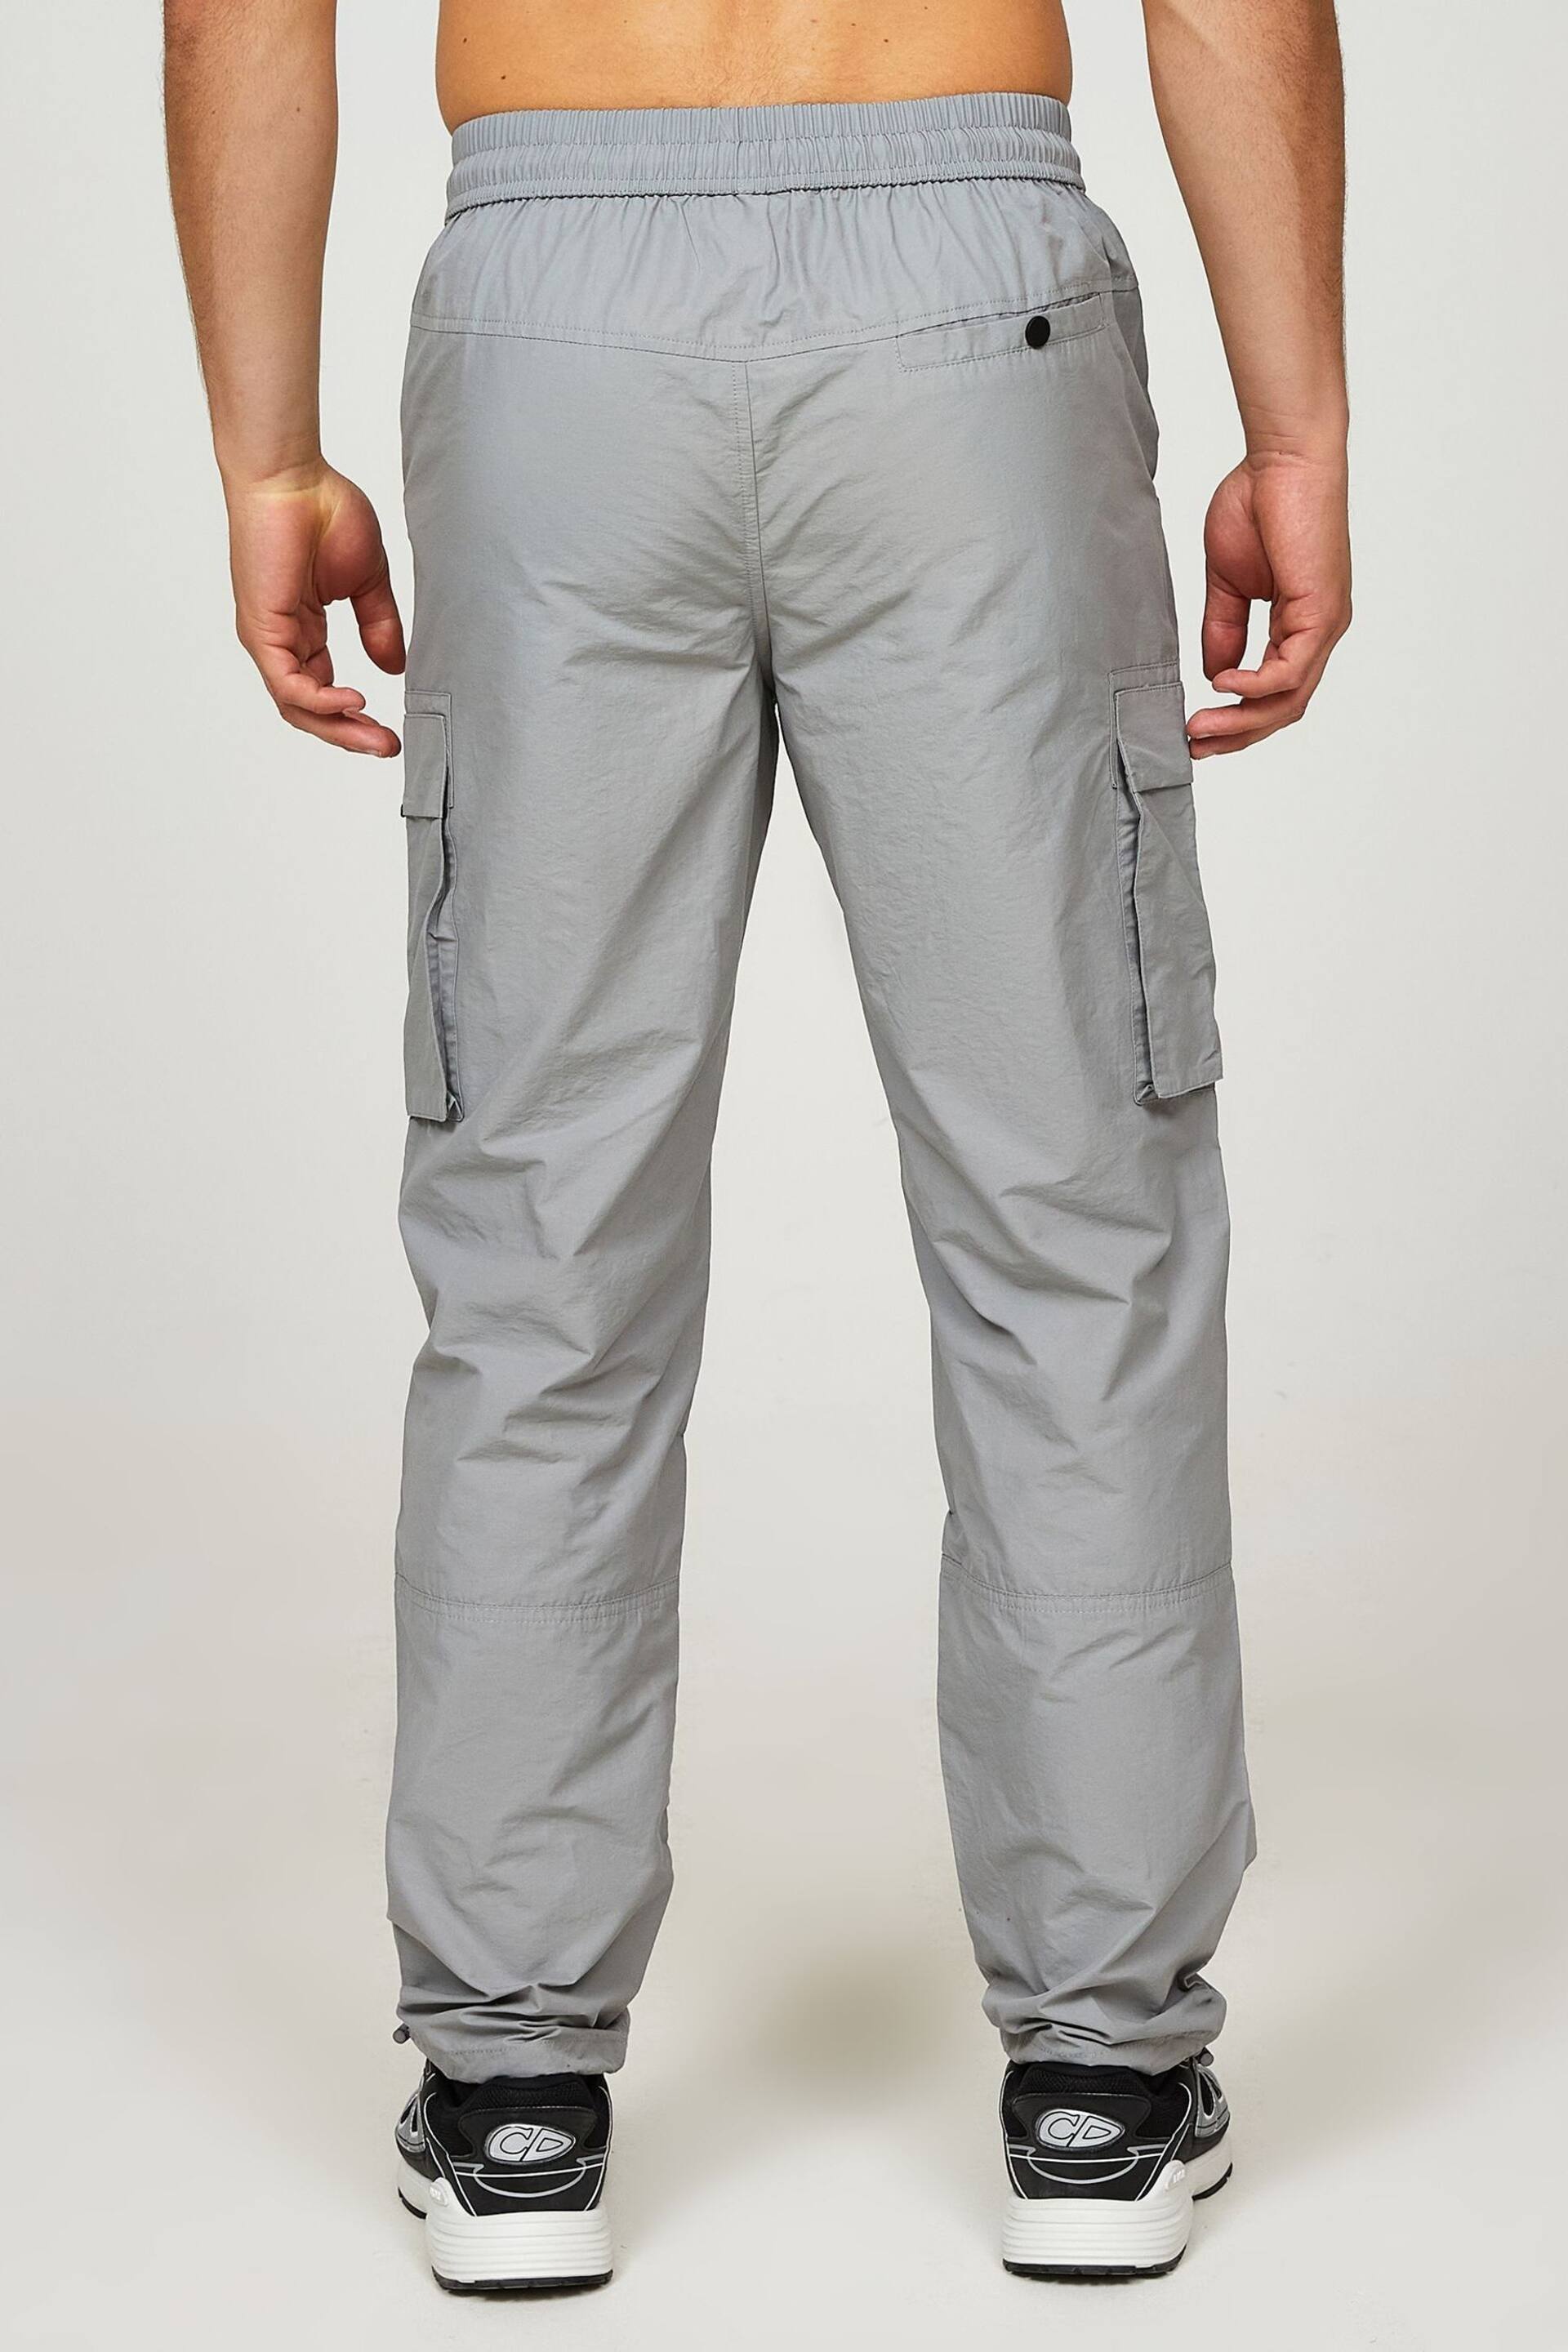 Alessandro Zavetti Grey Lodetti Cargo Trousers - Image 3 of 7